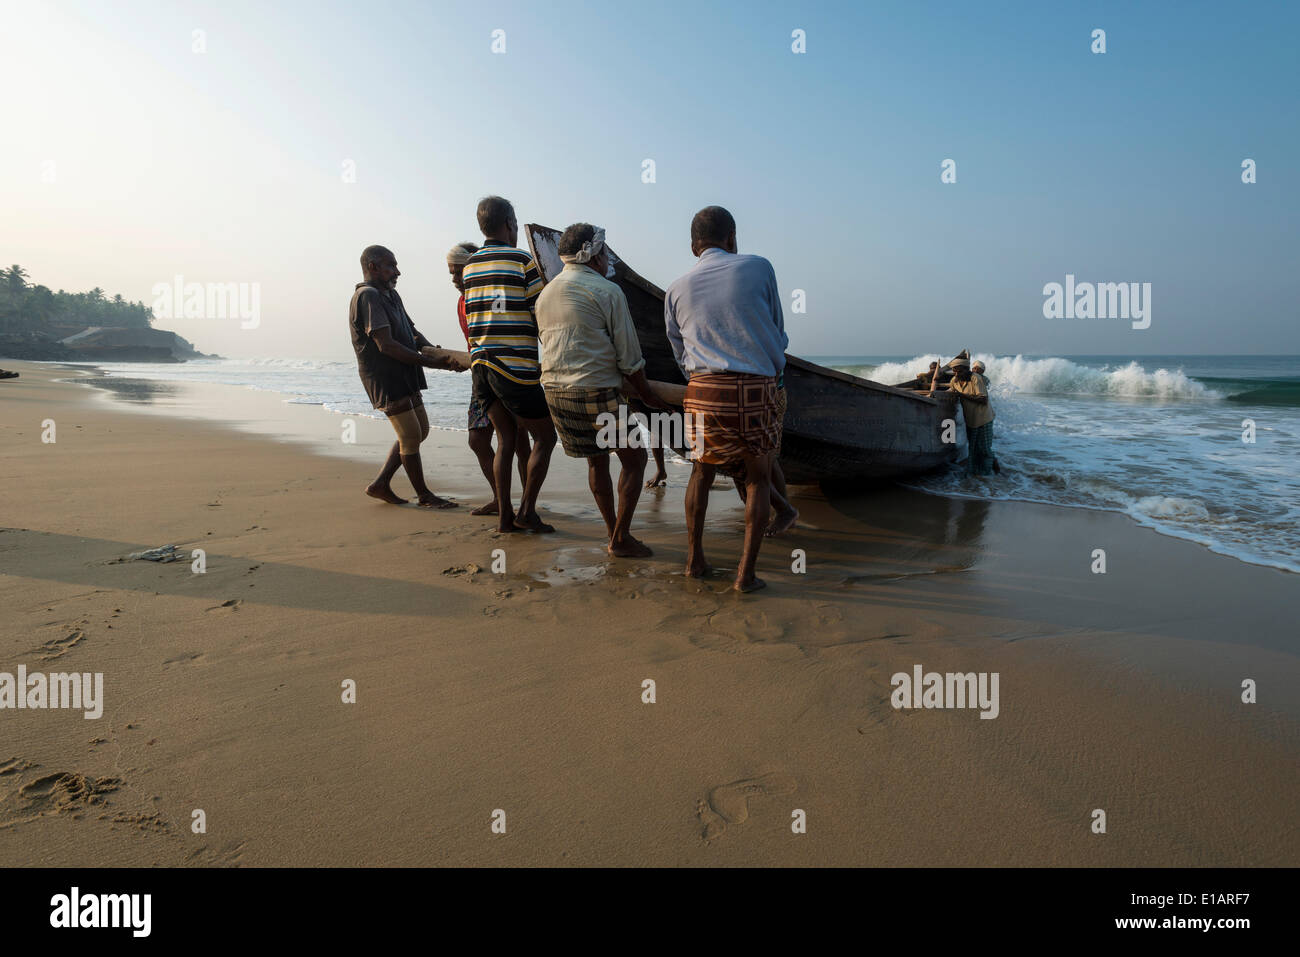 Fishermen pulling a boat onto the beach, Varkala, Kerala, India Stock Photo